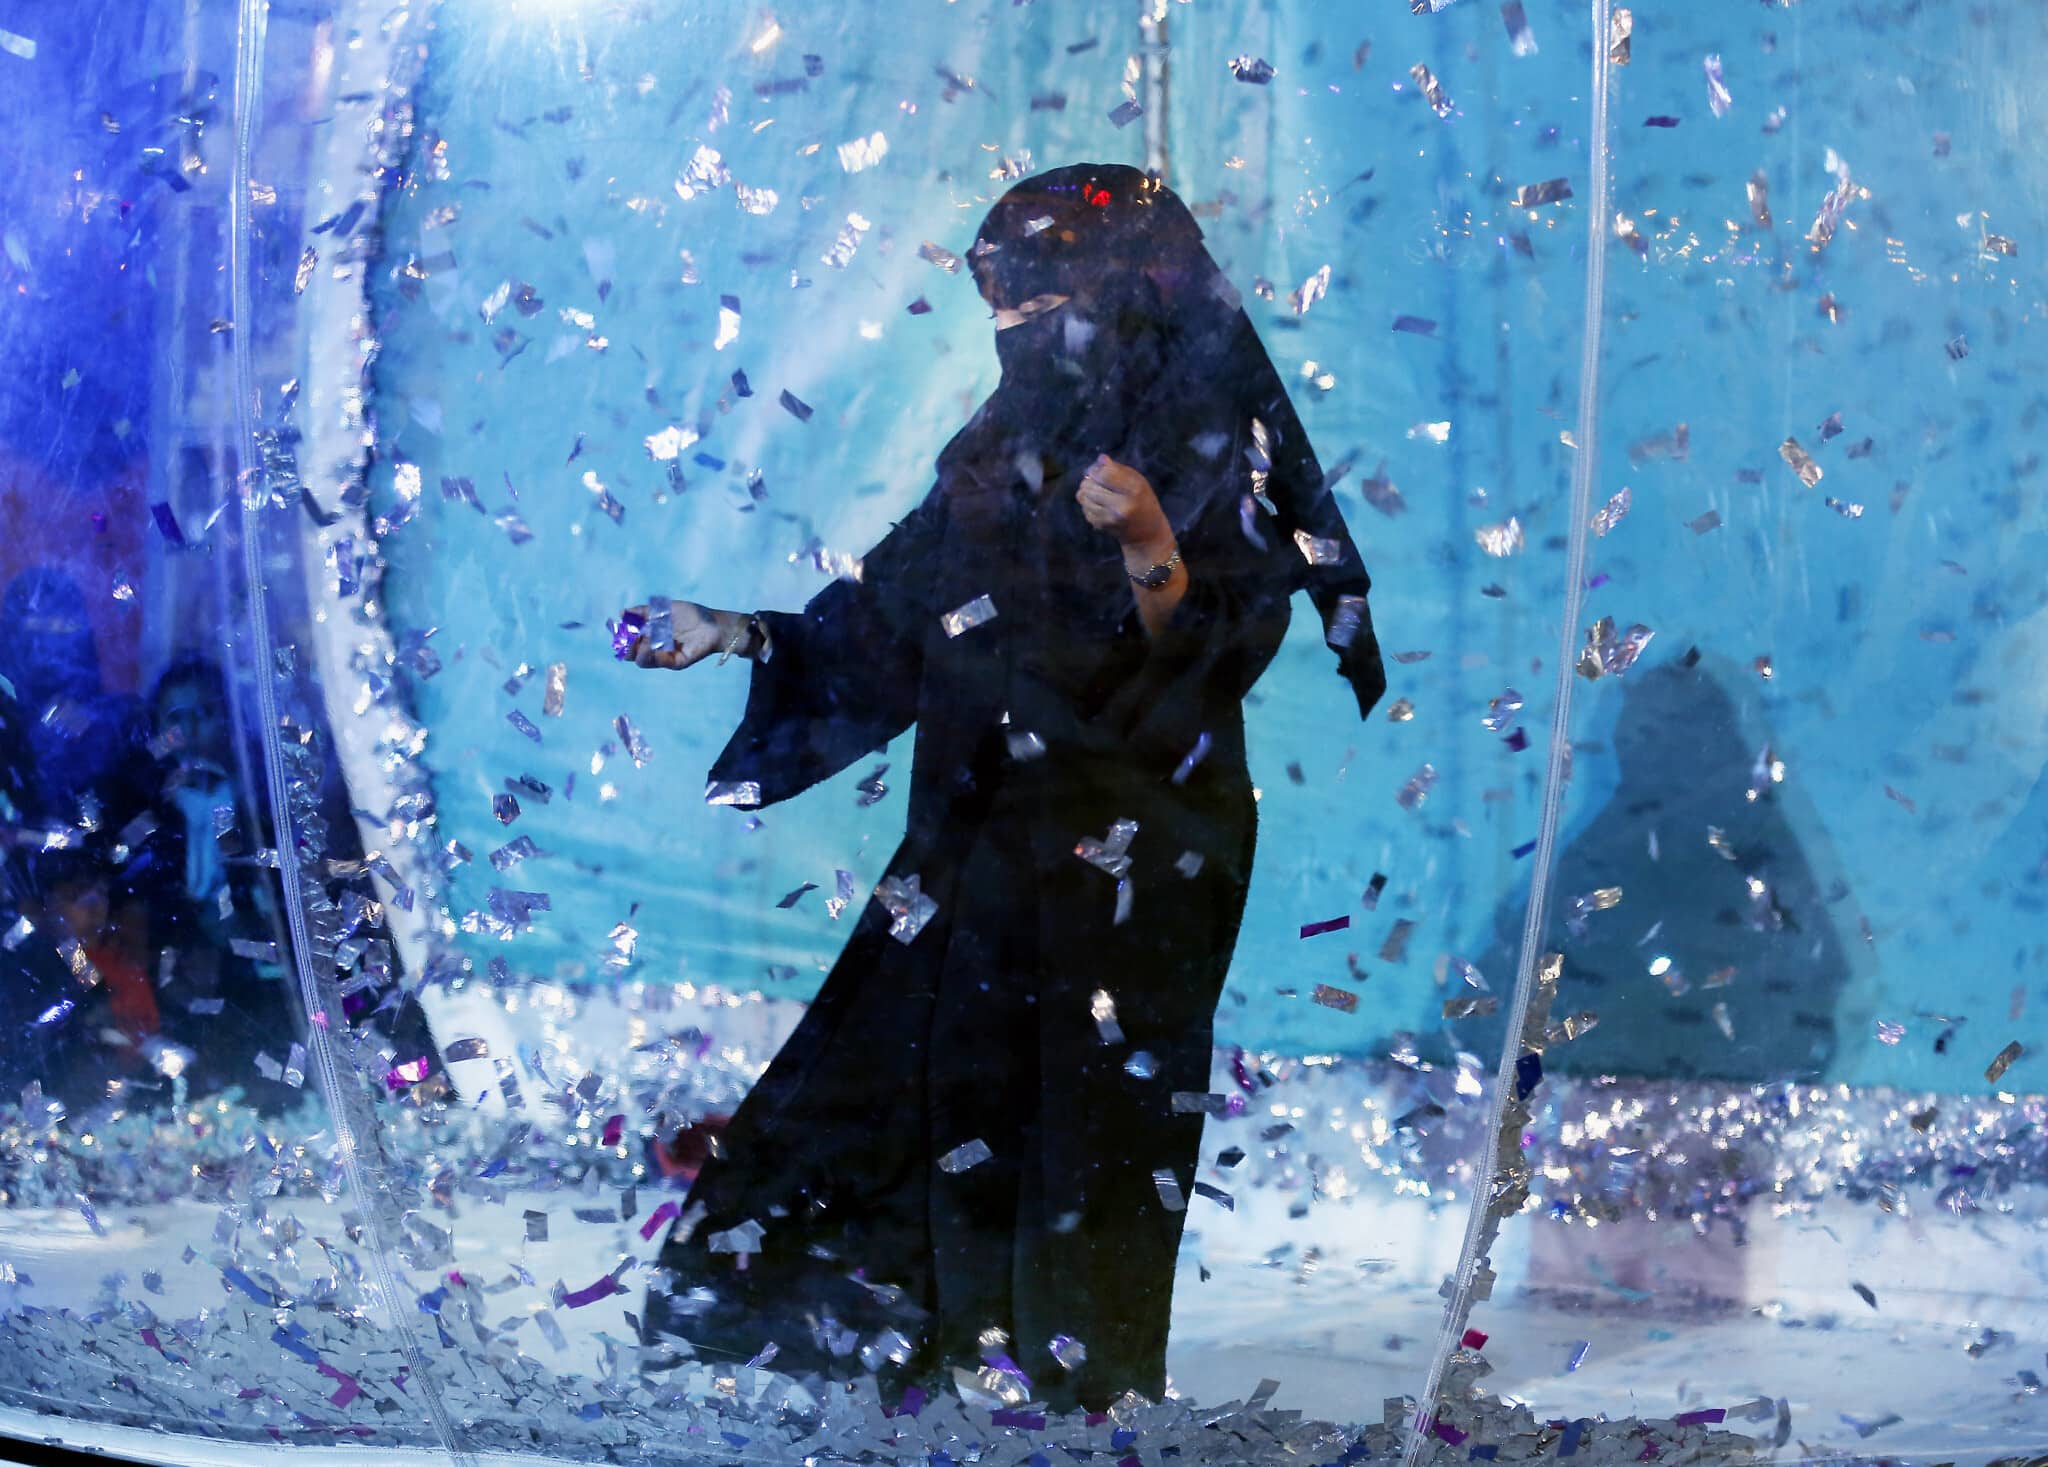 אישה סעודית משתמשת במתקן בפארק שעשועים, במסגרת הגדלת זכויות הנשים שם, ארכיון, 2019 (צילום: AP Photo/Amr Nabil)